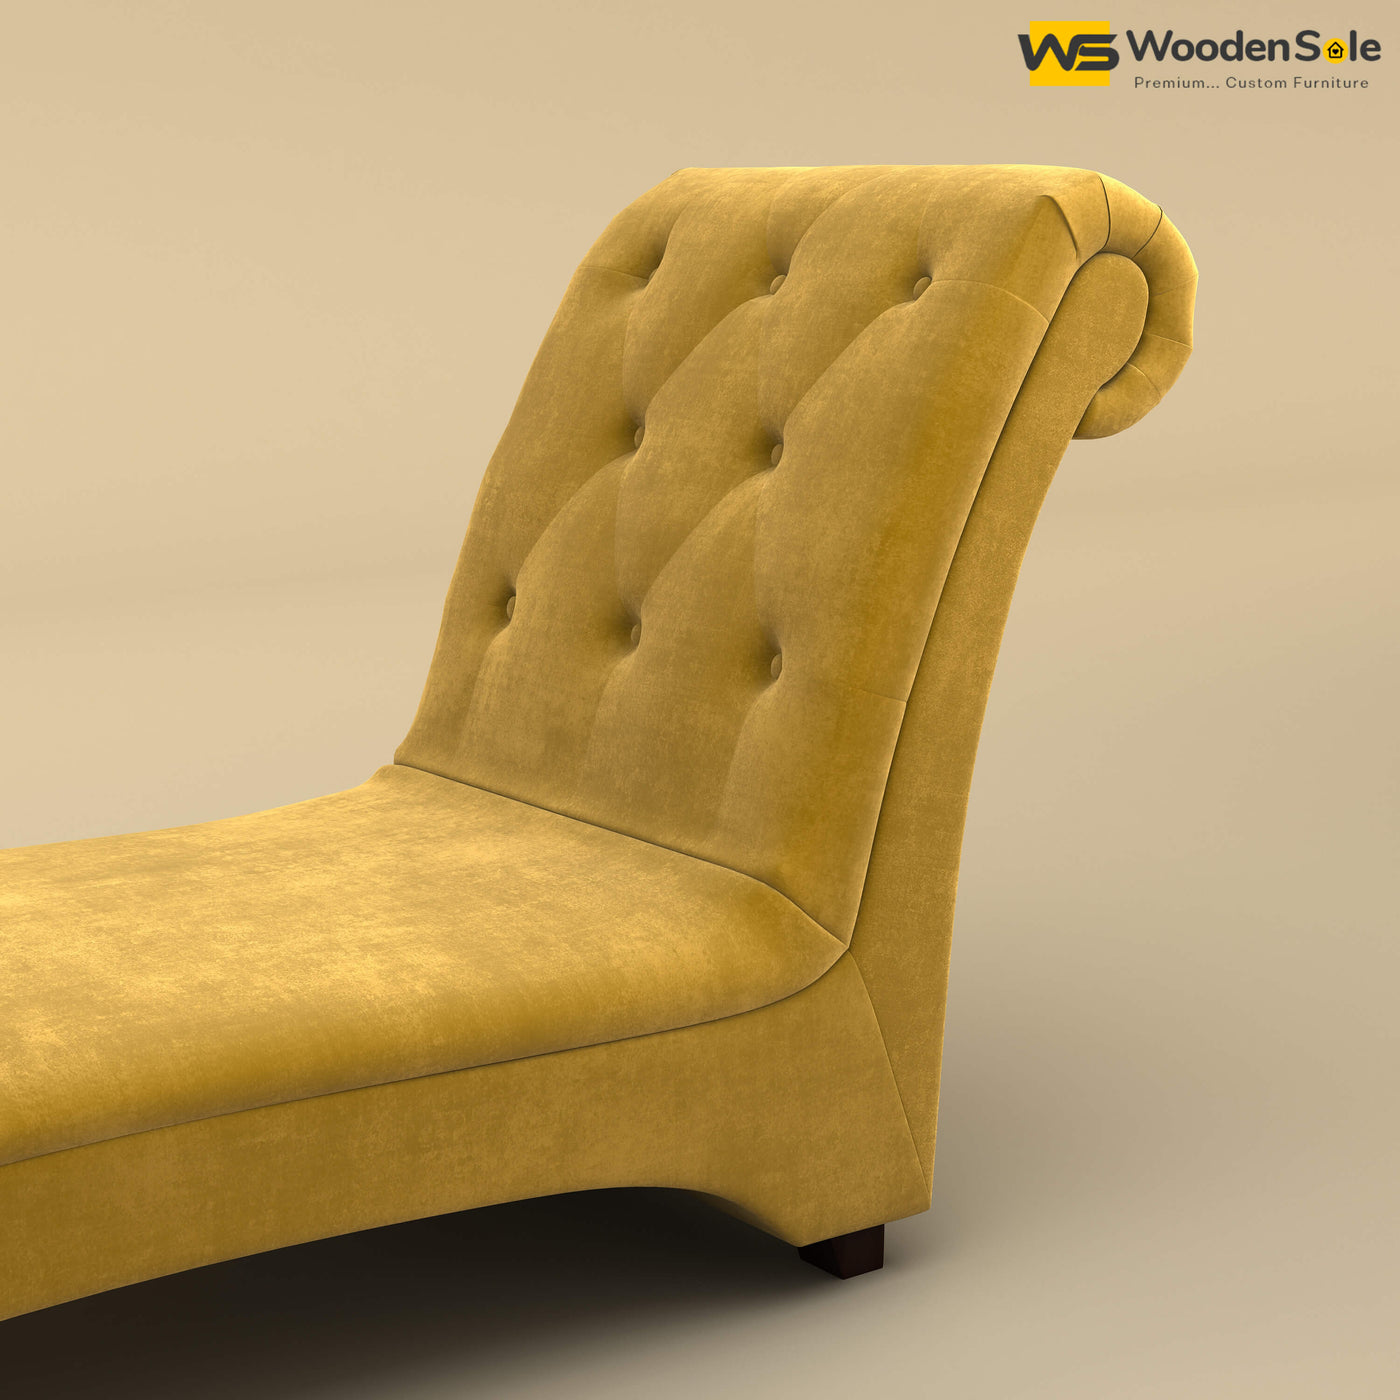 Turkish Chaise Lounge (Velvet, Mustard Yellow)